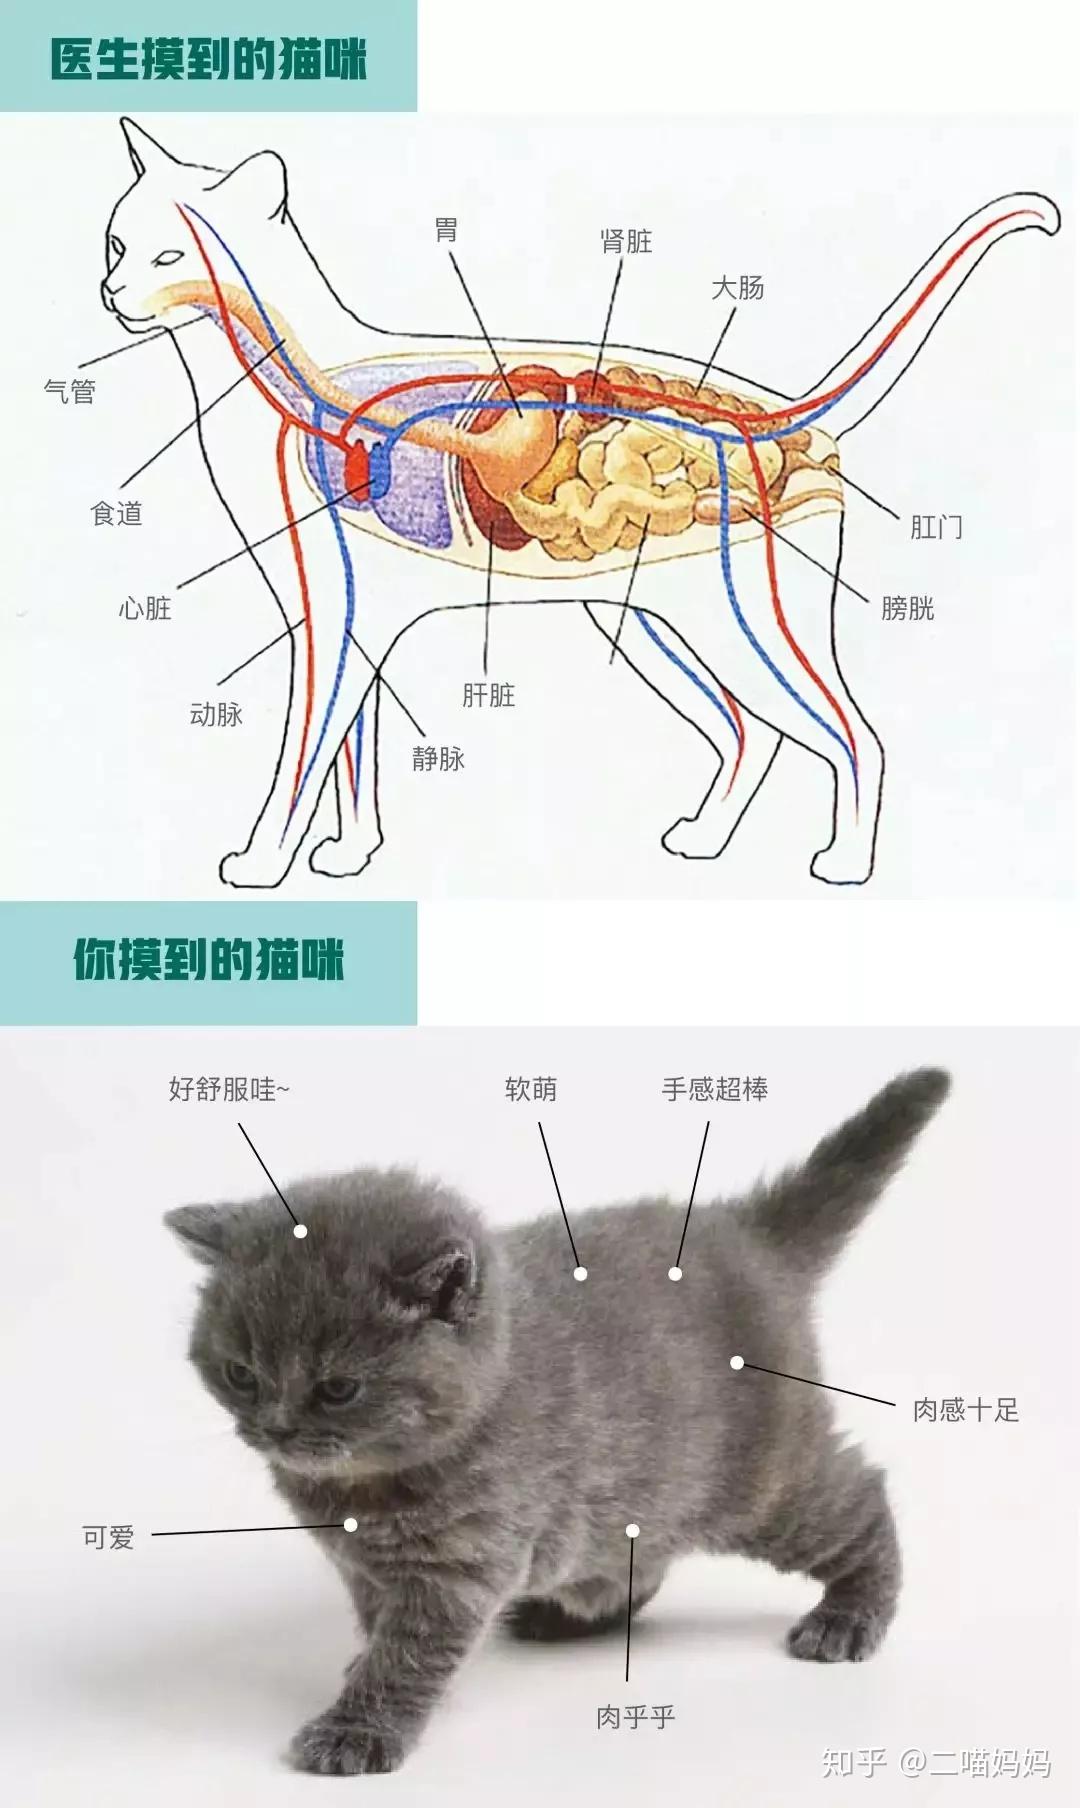 猫猫伸懒腰动作合集~ cr:TACAT橘猫量贩